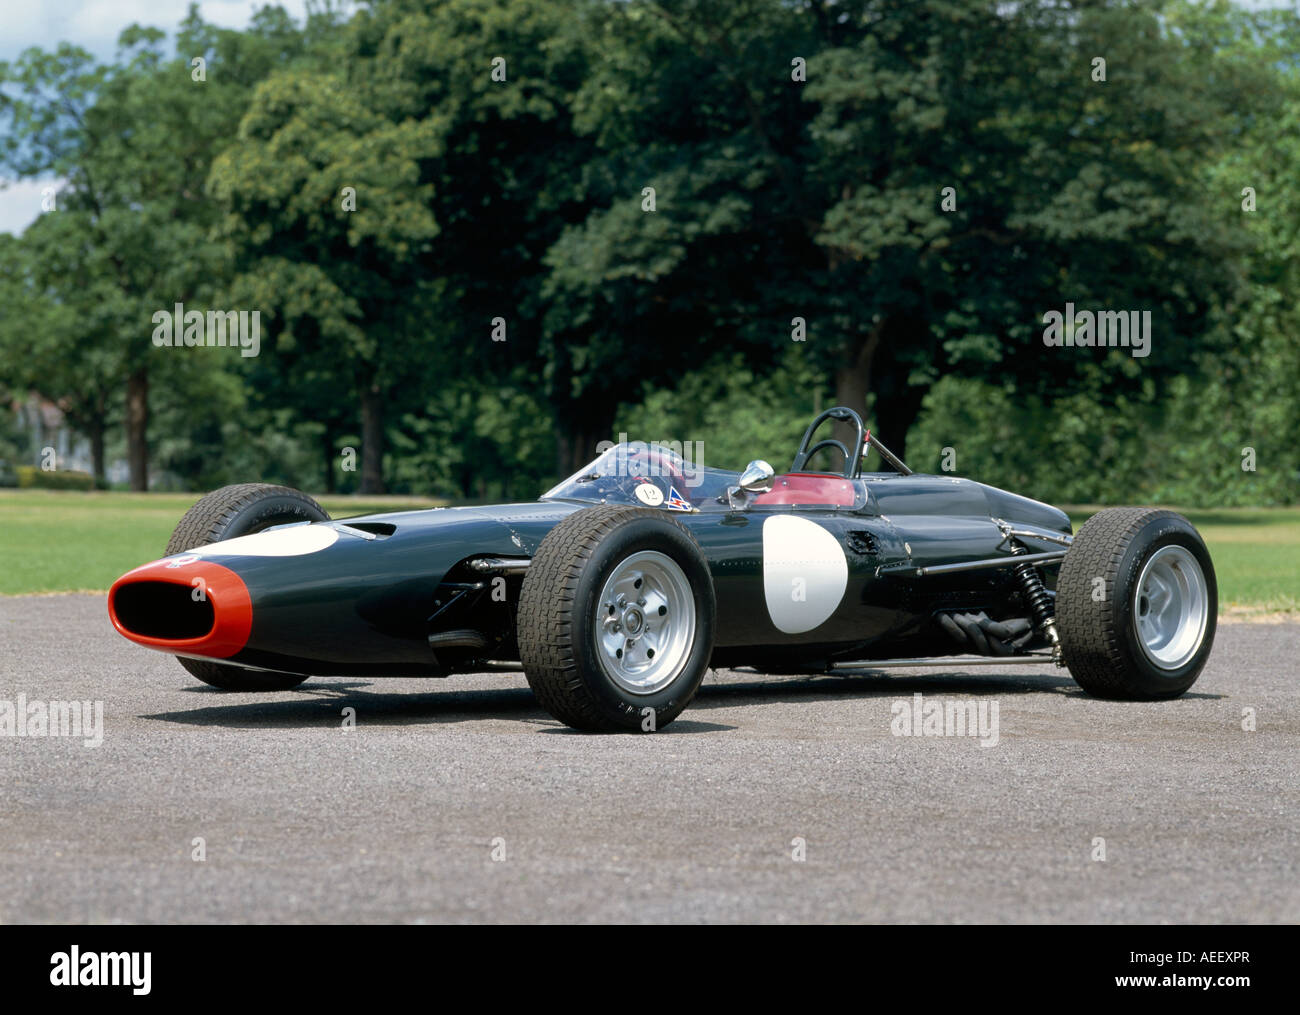 1964 BRM P261 Formel1 einsitzige Rennwagen. Stockfoto